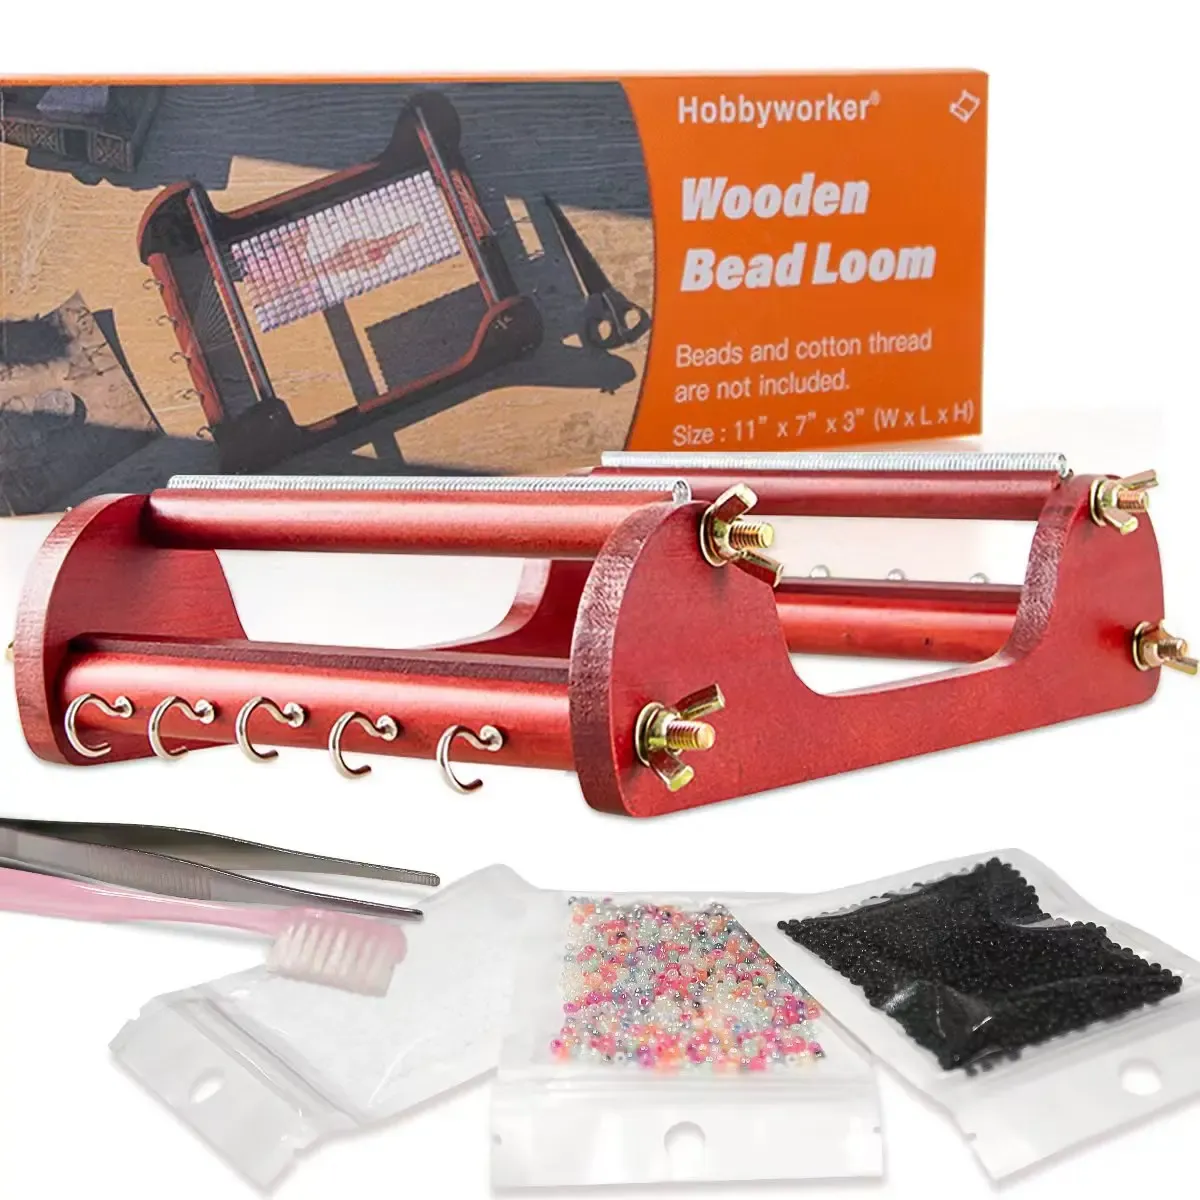 ブレスレットXuqian hot販売20*26*7cm織りビーディングマシンの女性のための木製ビーズ織機はネックレスブレスレットツールL0118を作成します